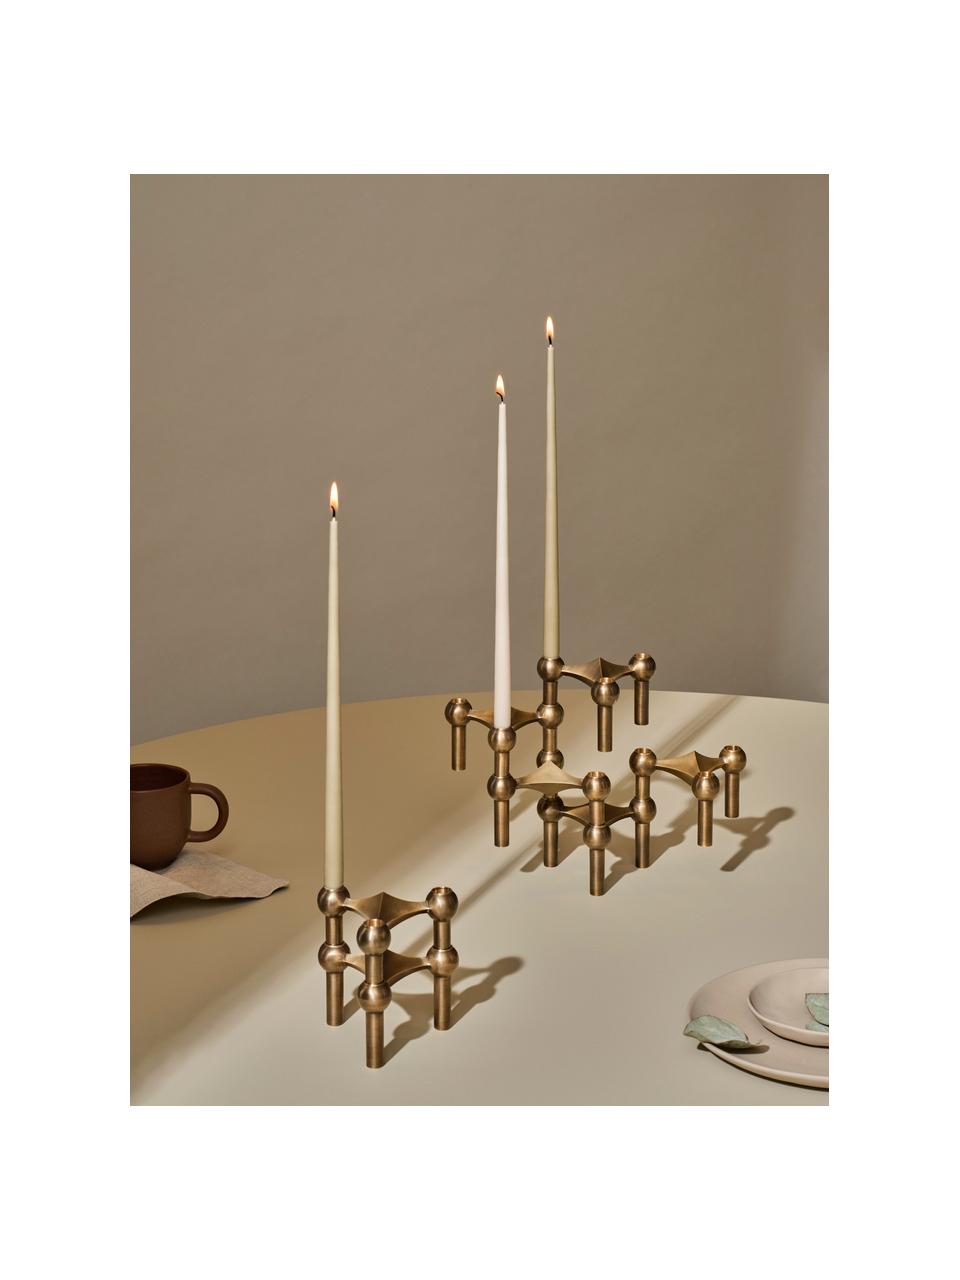 Tenké stolní svíčky Stoff Nagel, 6 ks, Parafínový vosk, Greige, Ø 1 cm, V 29 cm